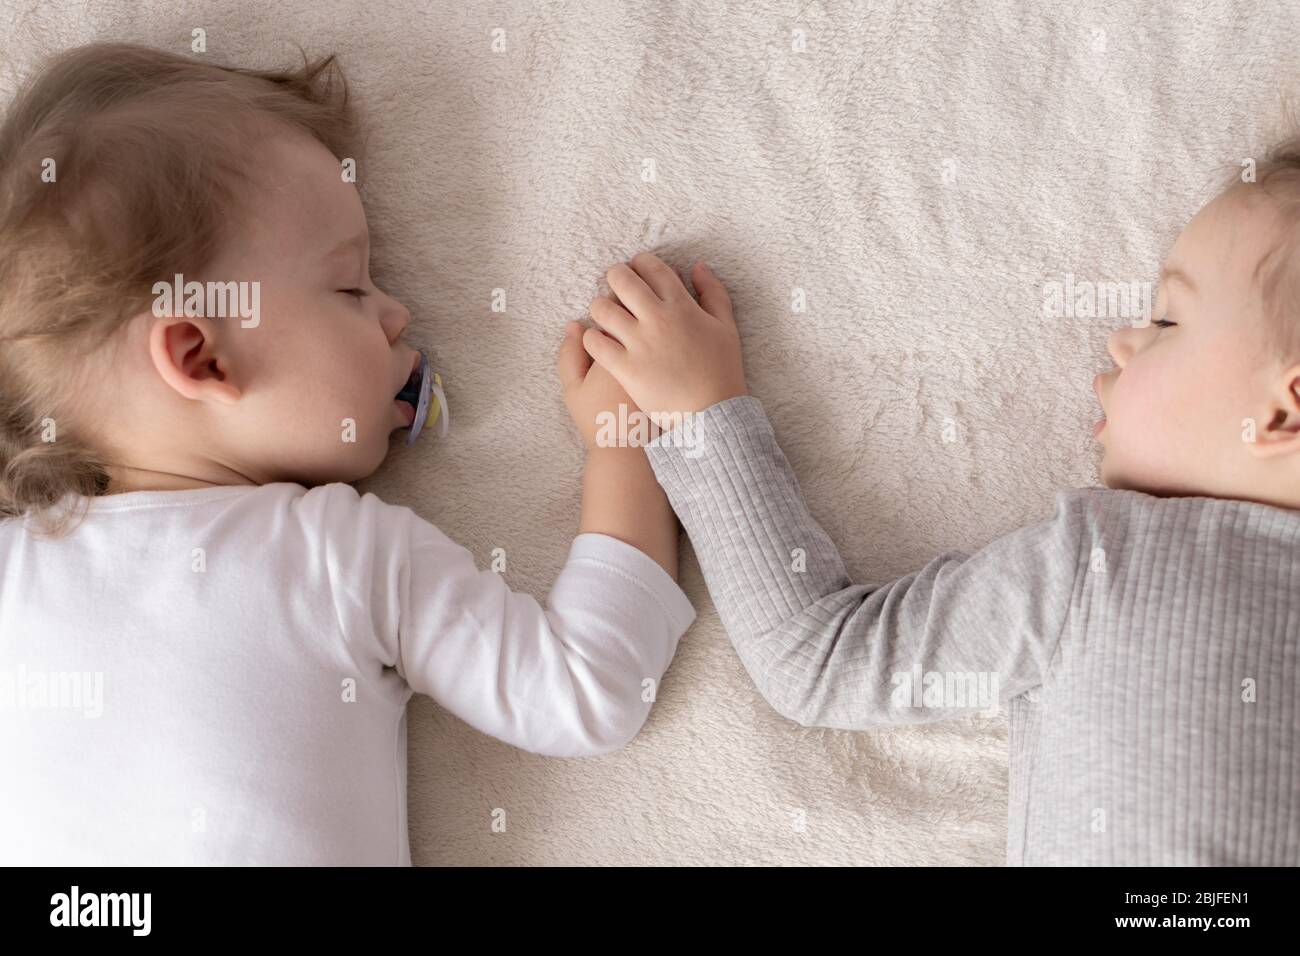 Kindheit, Schlaf, Entspannung, Familie, Lifestyle-Konzept - zwei kleine Kinder im Alter von 2 und 3 Jahren in weiß-beigem Body schlafen auf einem beige Stockfoto